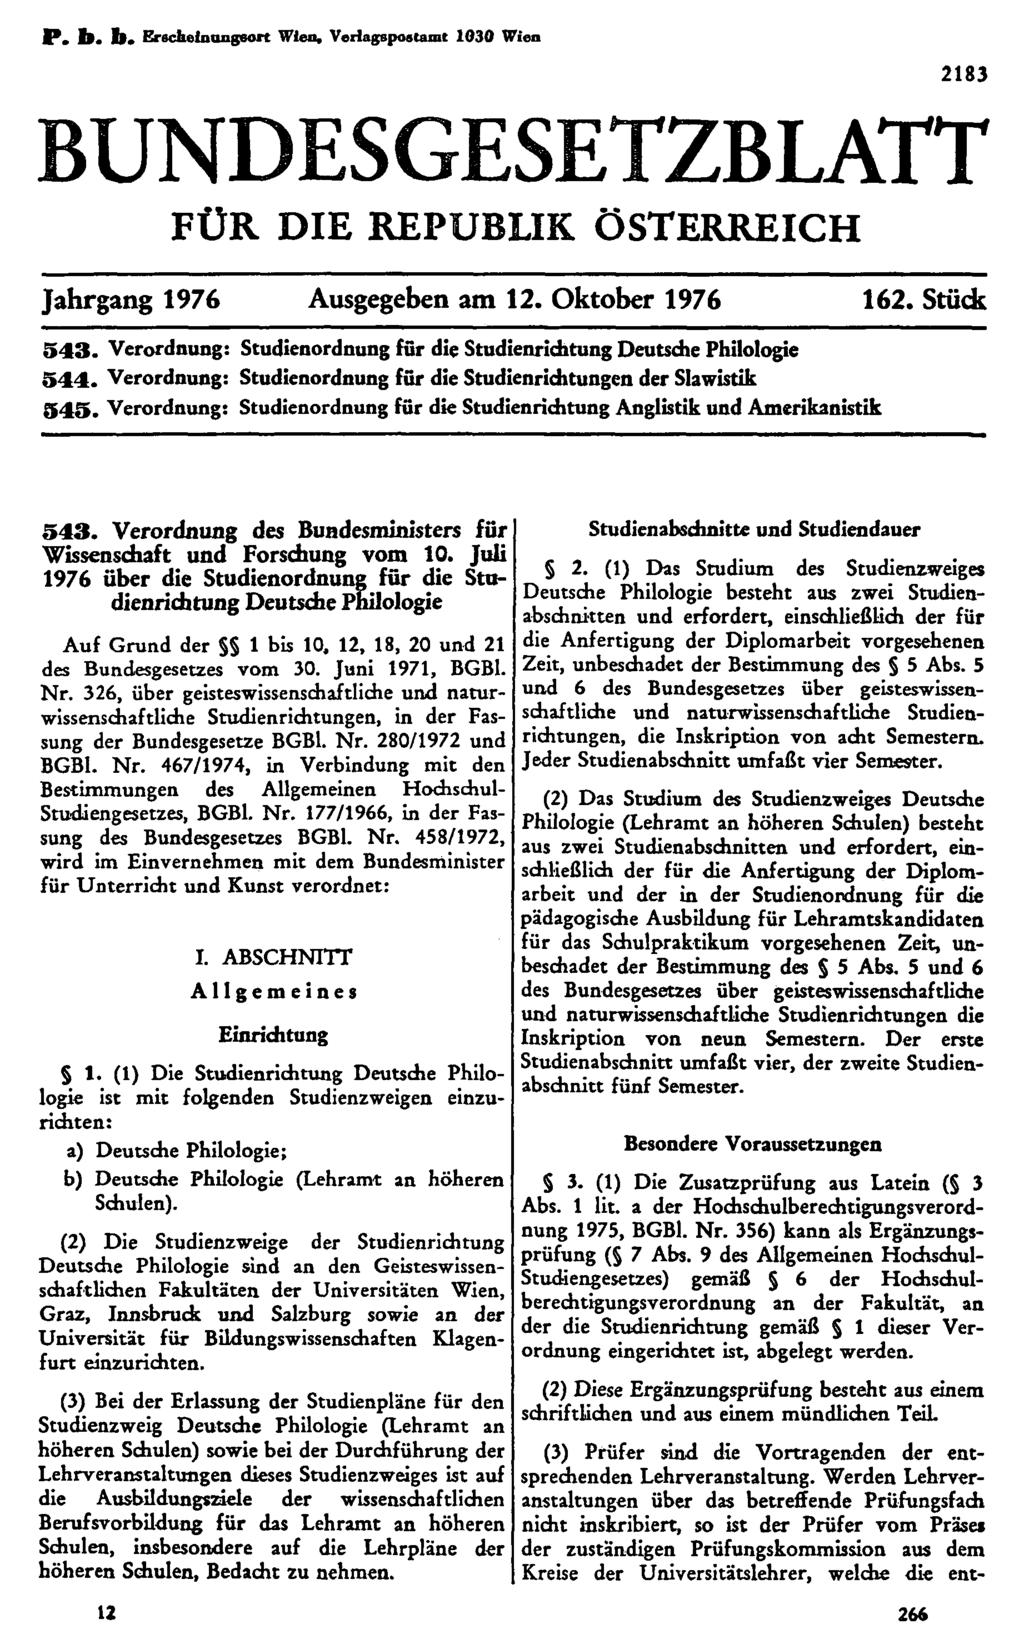 P. b. b. Erscheinungsort Wien, Verlagspostamt 1030 Wien BUNDESGESETZBLATT FÜR DIE REPUBLIK ÖSTERREICH Jahrgang 1976 Ausgegeben am 12. Oktober 1976 162. Stück 543.